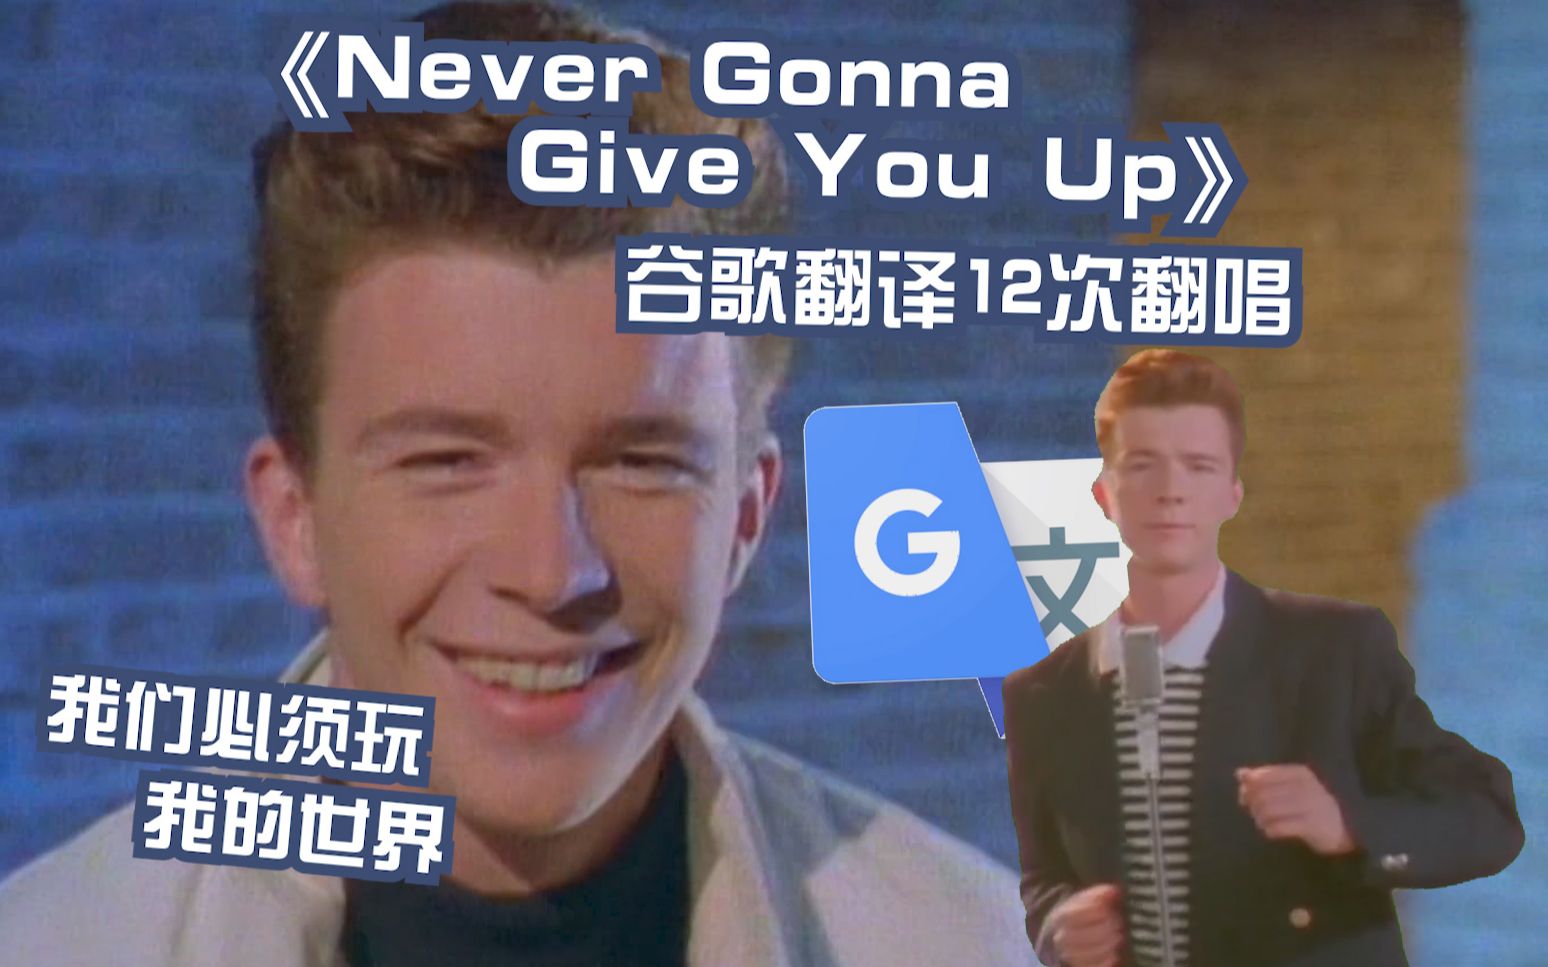 你没被骗！《Never Gonna Give You Up》谷歌翻译12次翻唱：我们必须玩我的世界！任何形式的汉堡包都值得被歌颂！